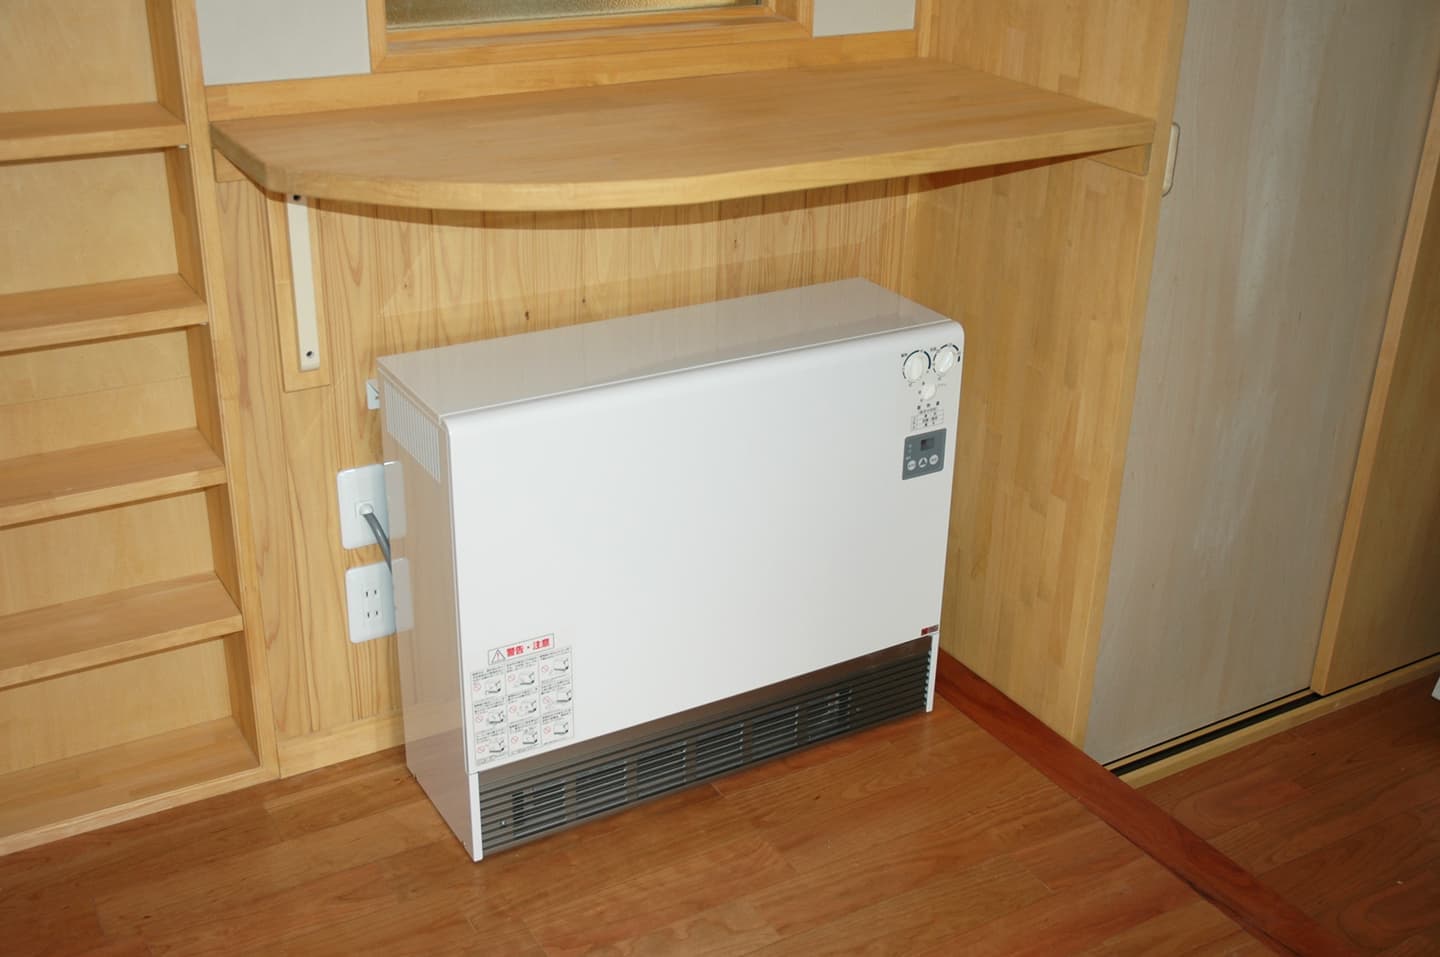 蓄熱式暖房機